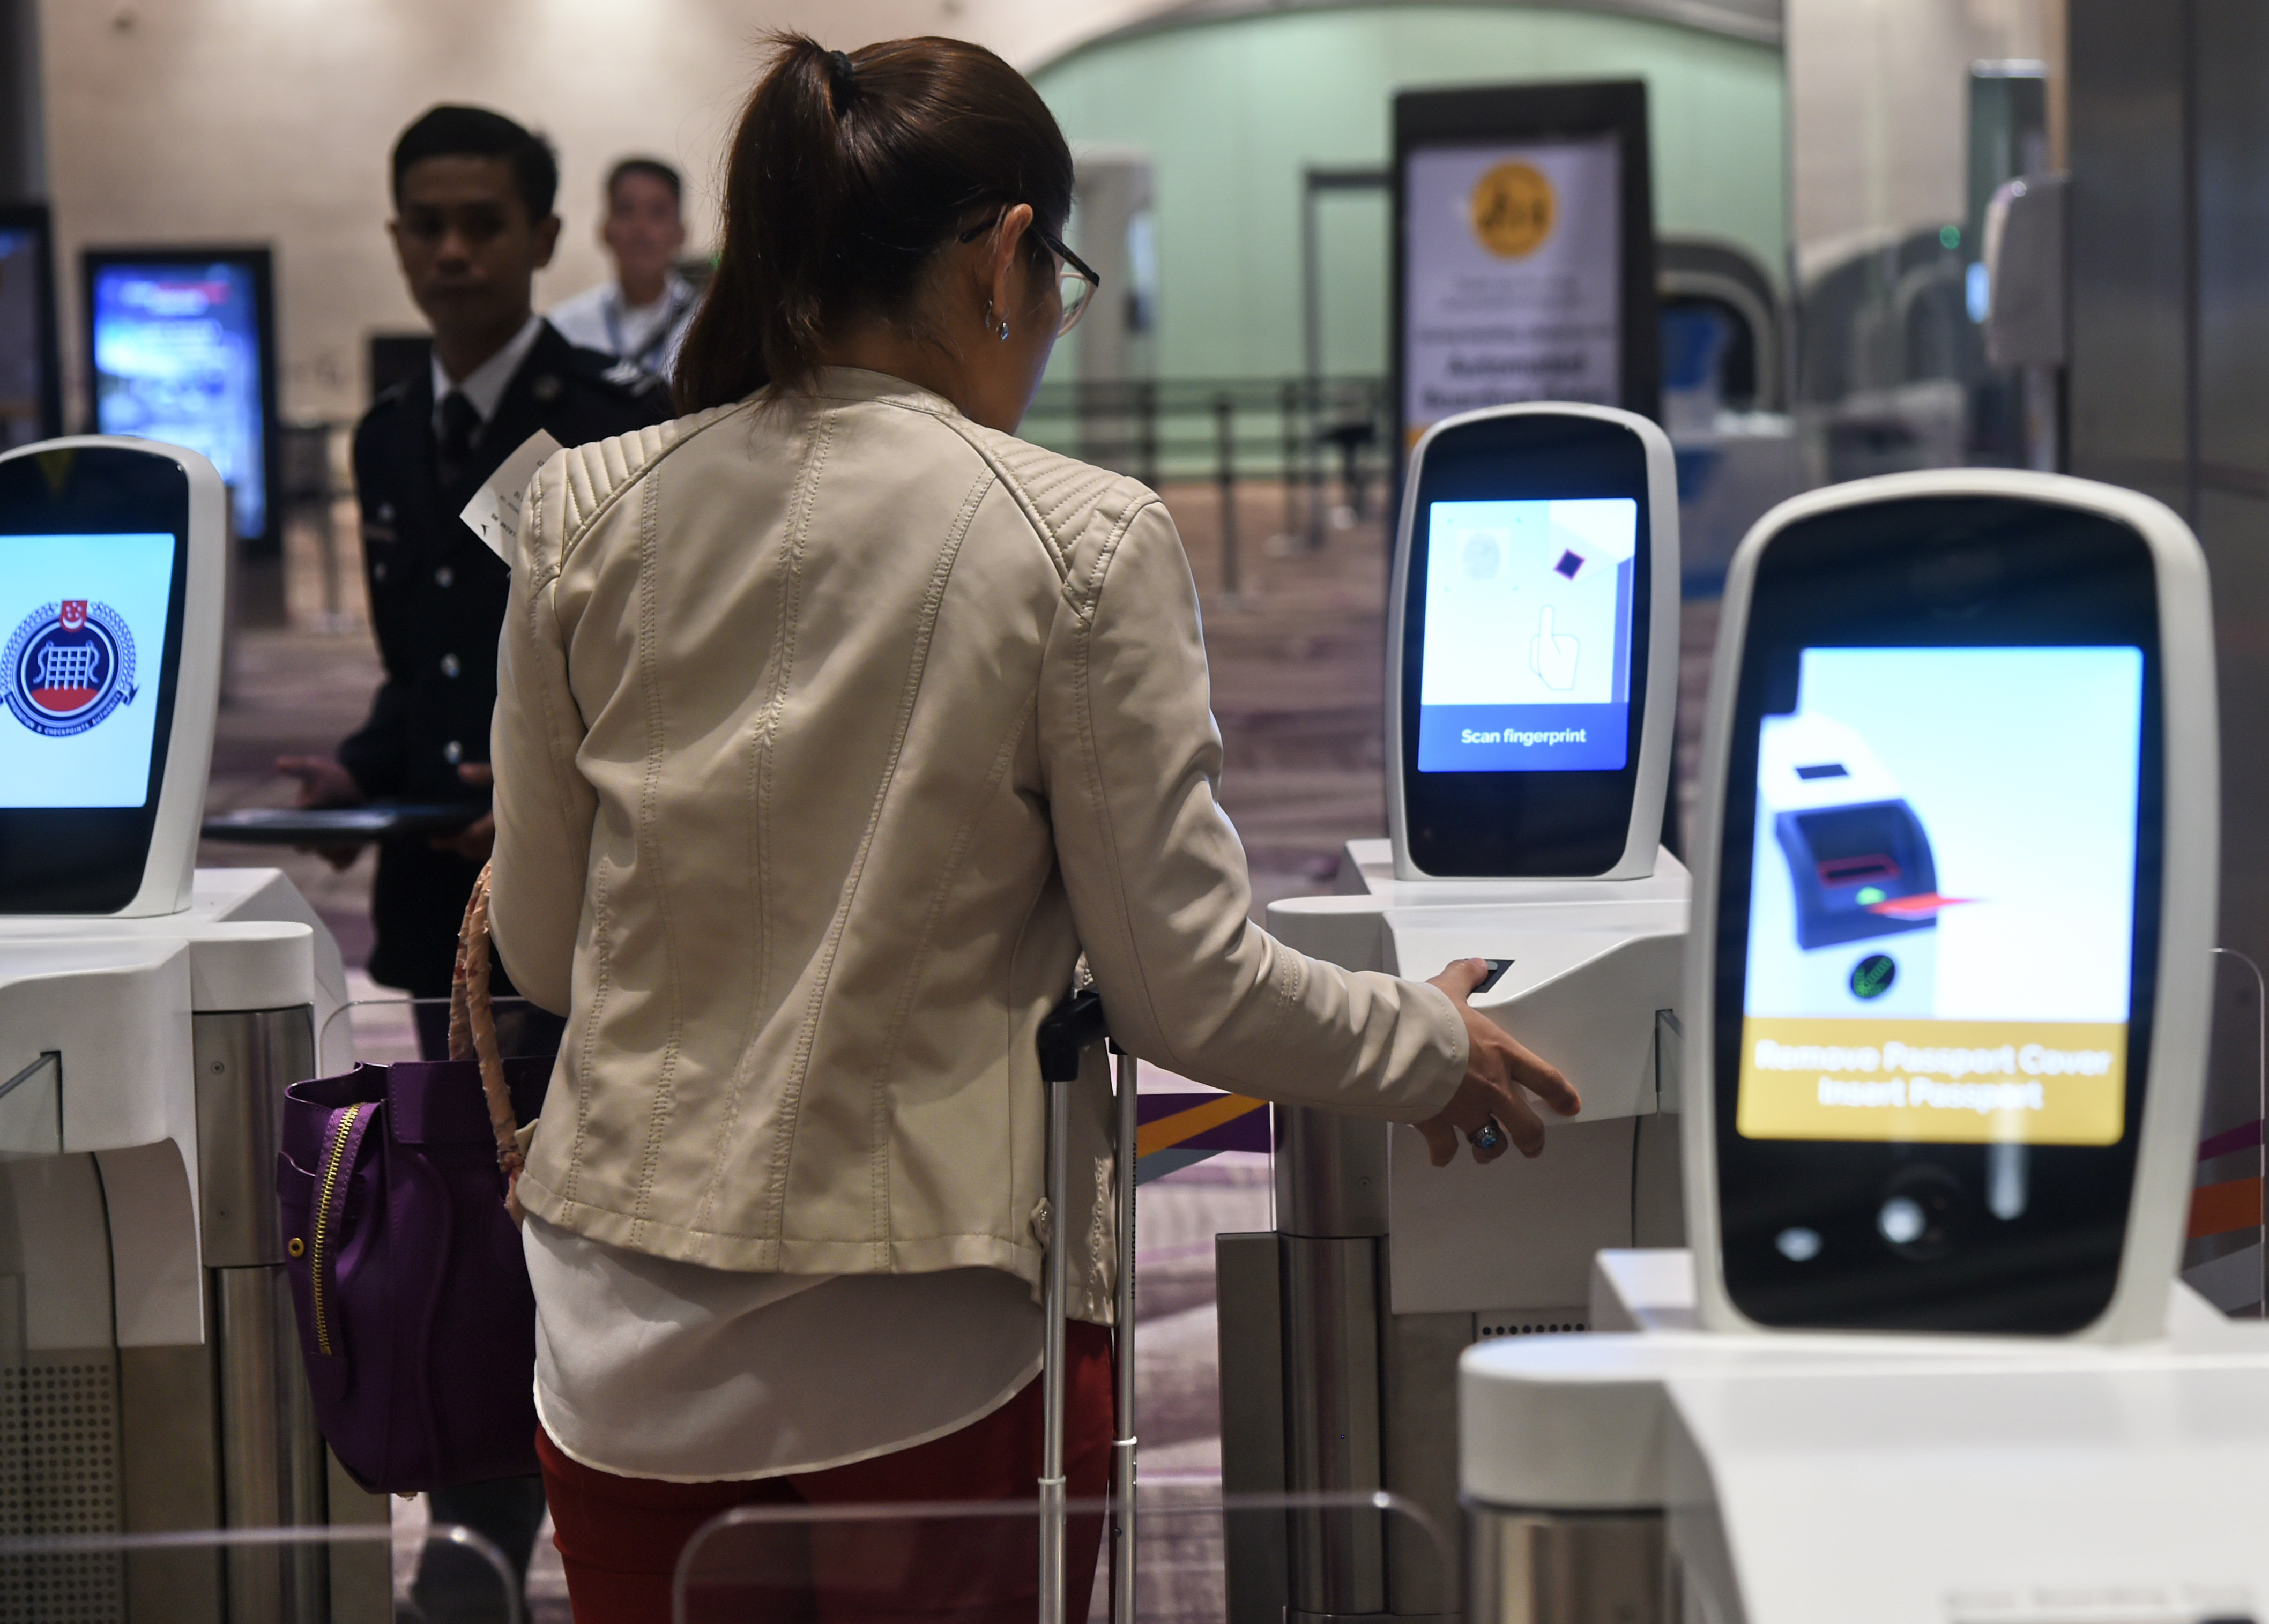 Arcfelismerő rendszer figyelmeztetheti az elbóklászó utasokat a szingapúri reptéren